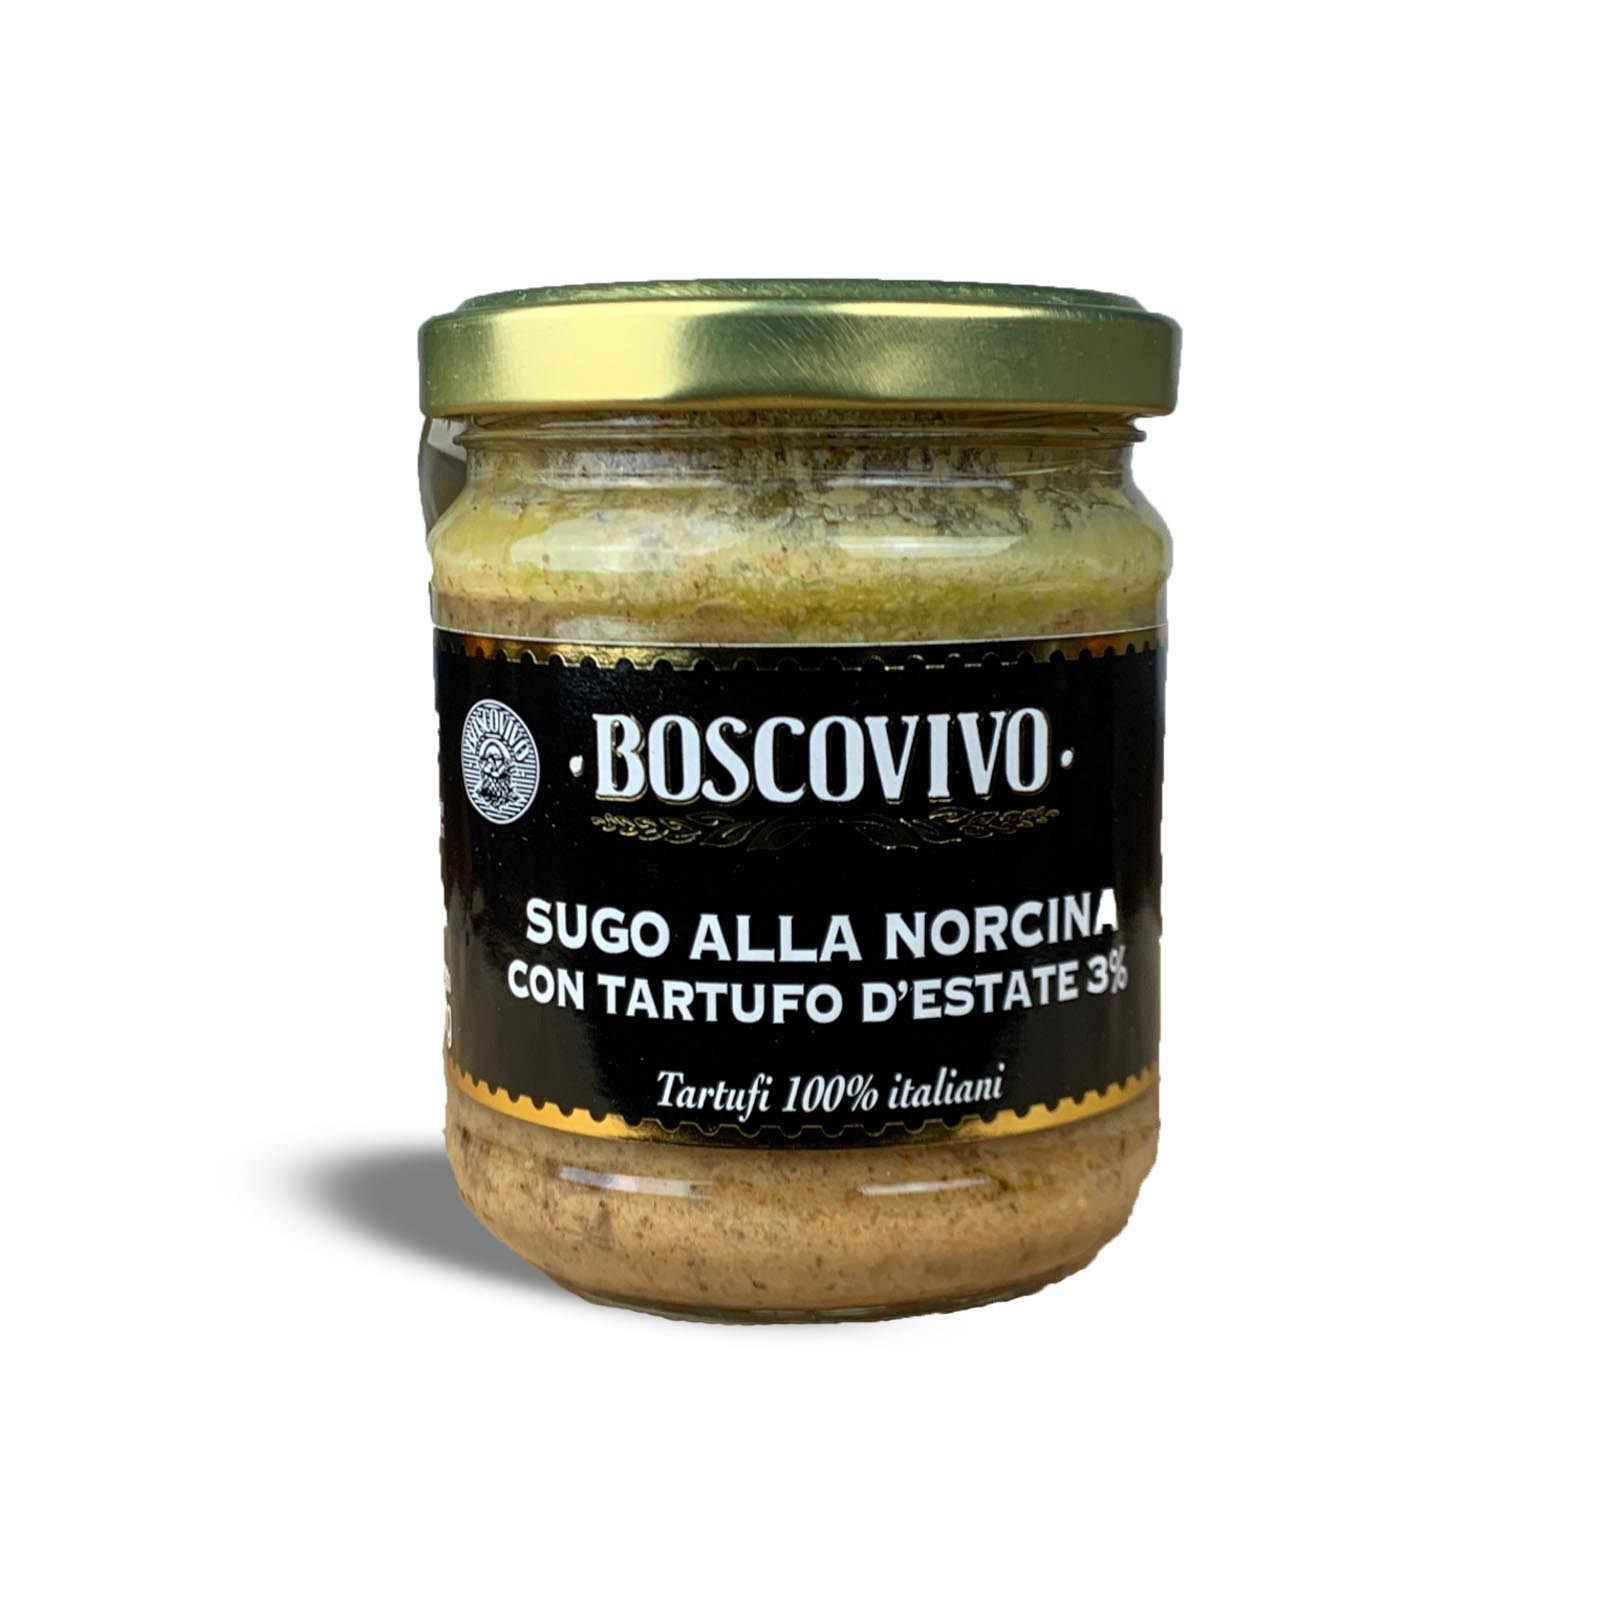 Truffle “Norcina” Pasta Sauce - Summer Truffle 3% Tuber Aestivum Vitt. - 100% Italian.